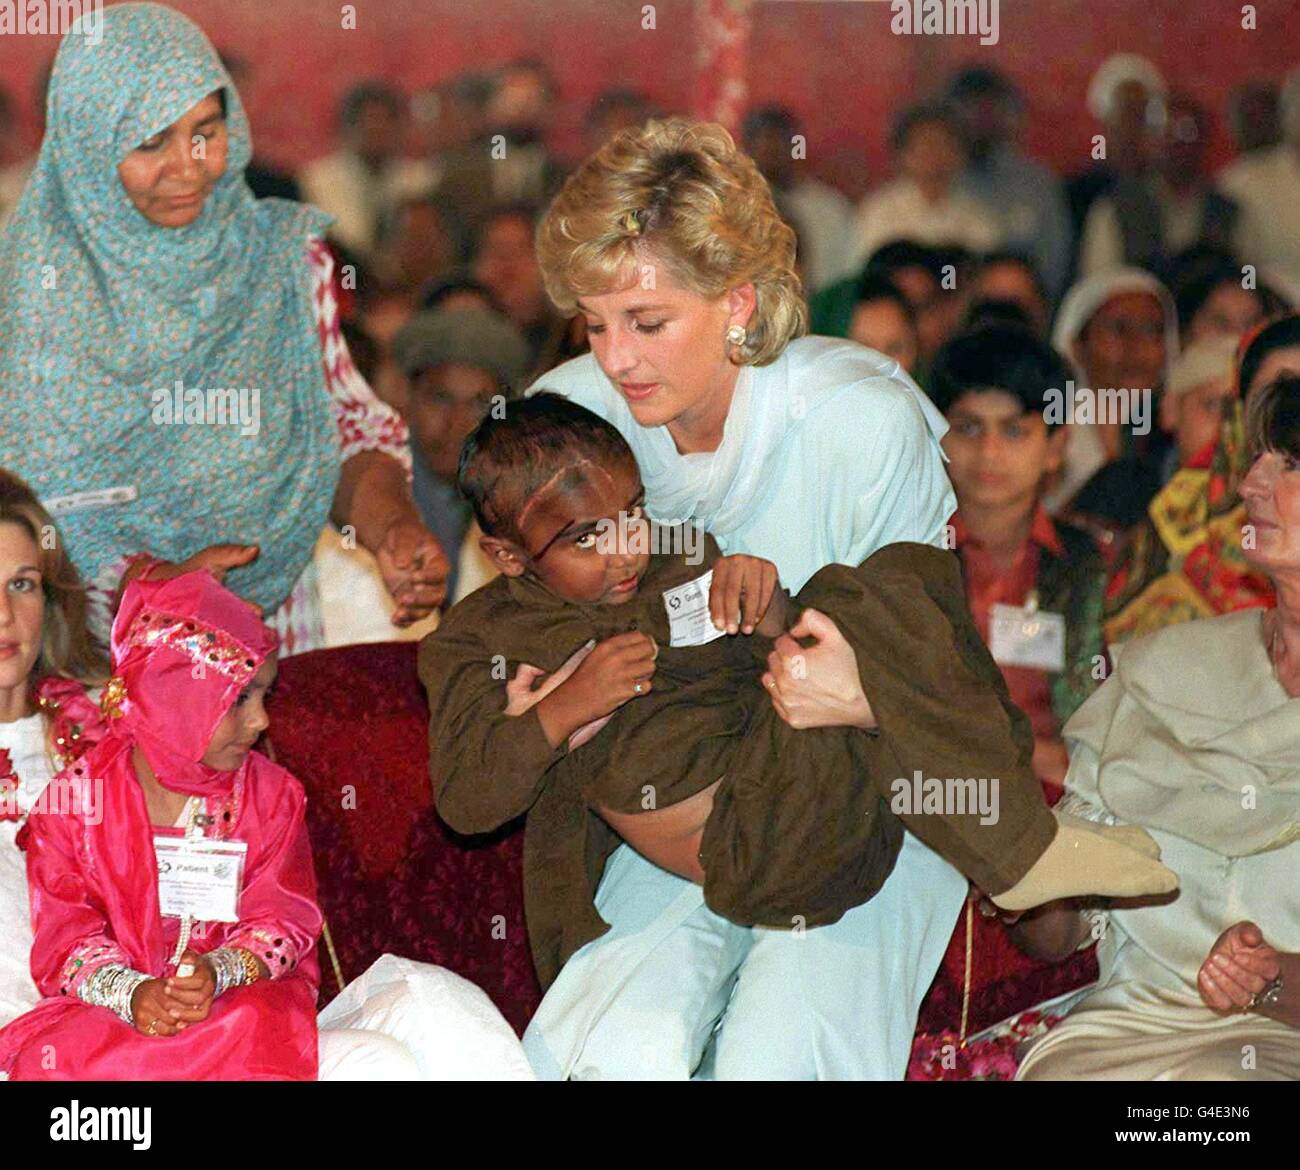 Nota per i redattori: Questa immagine trasmessa il 17 agosto 1998 per accompagnare un pacchetto di storie prima del primo anniversario della morte di Diana, Principessa del Galles. File della biblioteca, datato 22.2.96, di Diana, Principessa del Galles, che cullava un bambino malato in un ricevimento tenuto presso l'ospedale per il cancro Shaukat Khanum durante la sua visita in Pakistan l'anno scorso. Foto di John Giles.PA. Foto Stock